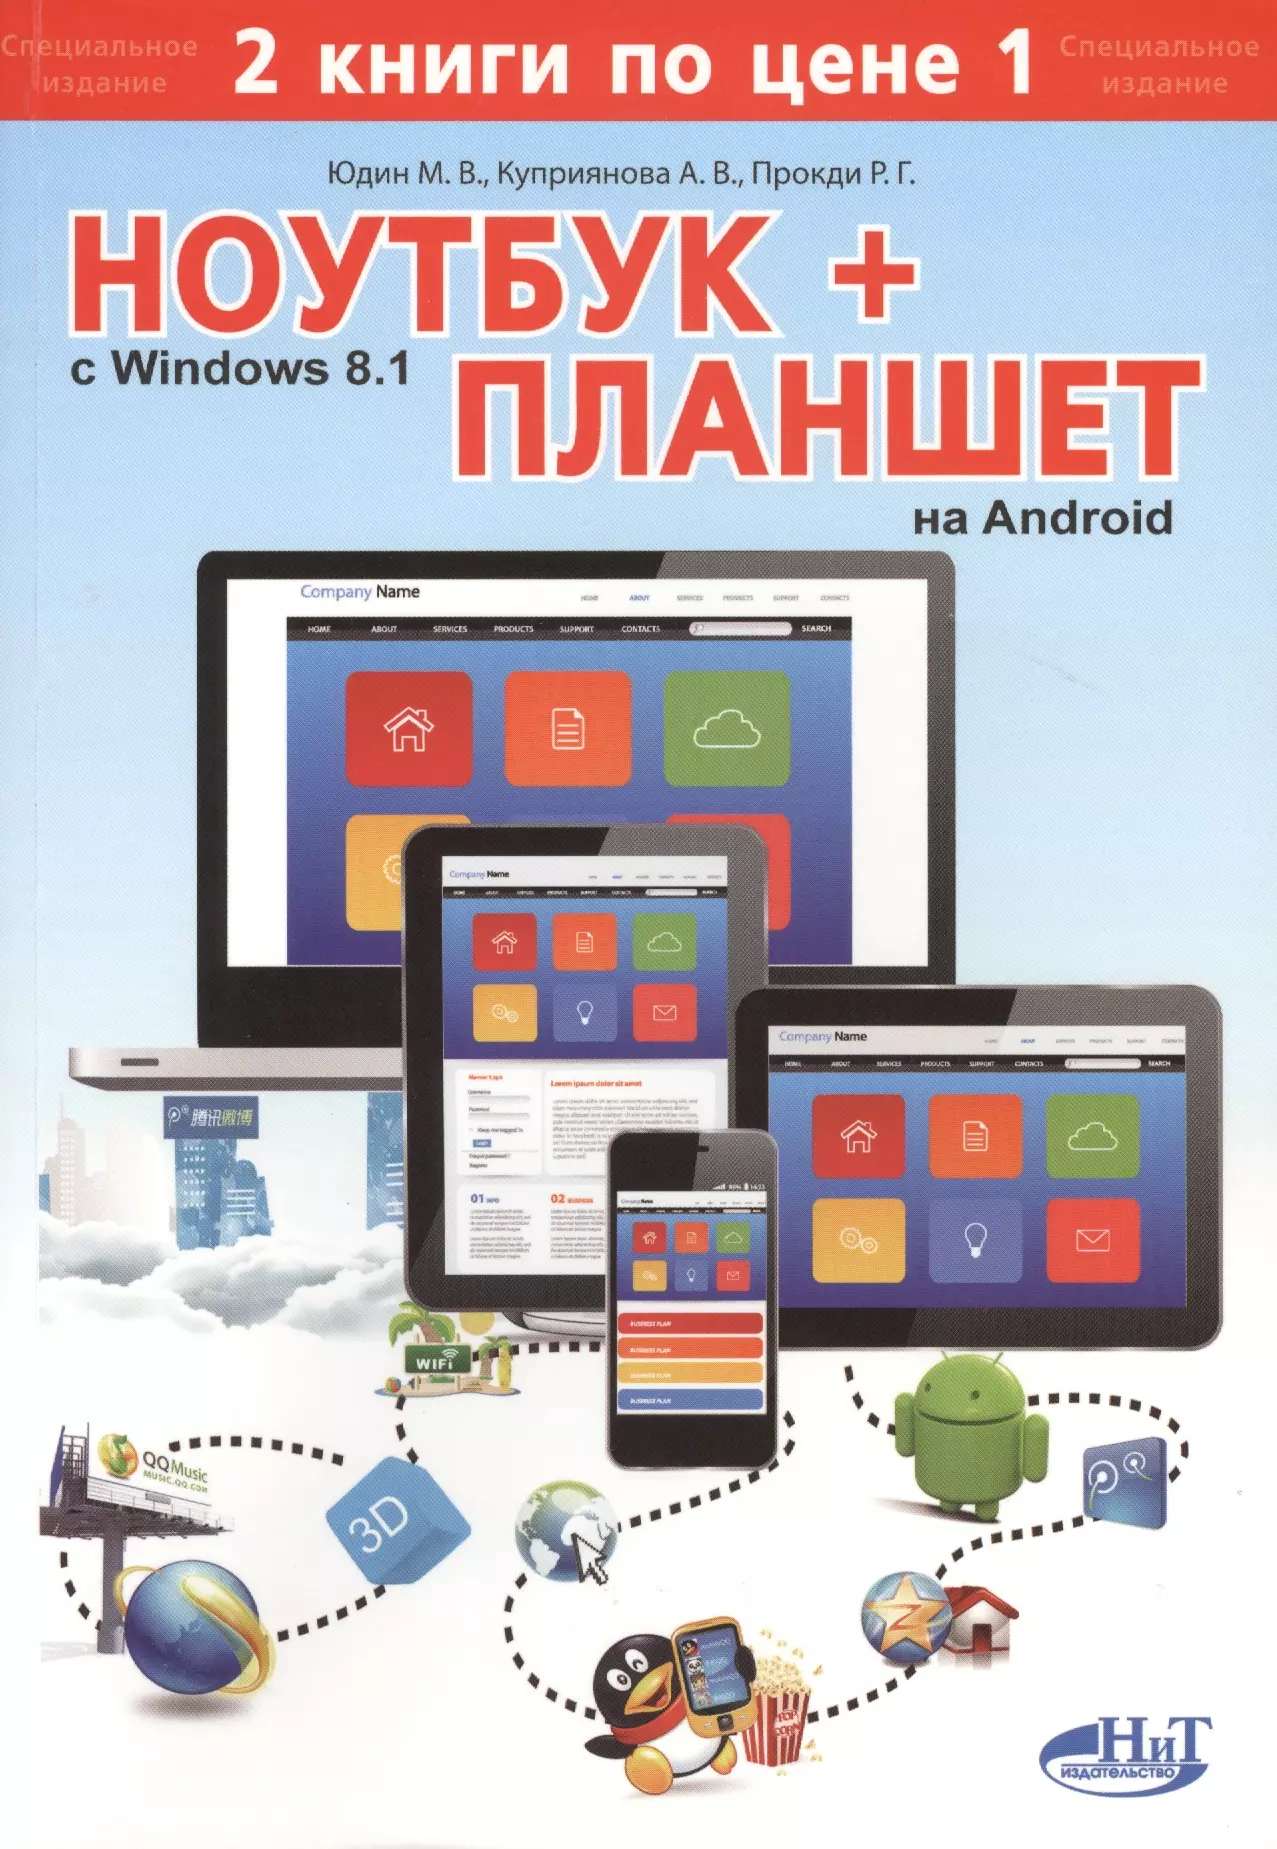 Юдин Михаил В. - Ноутбук с  Windows 8.1 + планшет на Android. 2 книги по цене 1: самоучитель